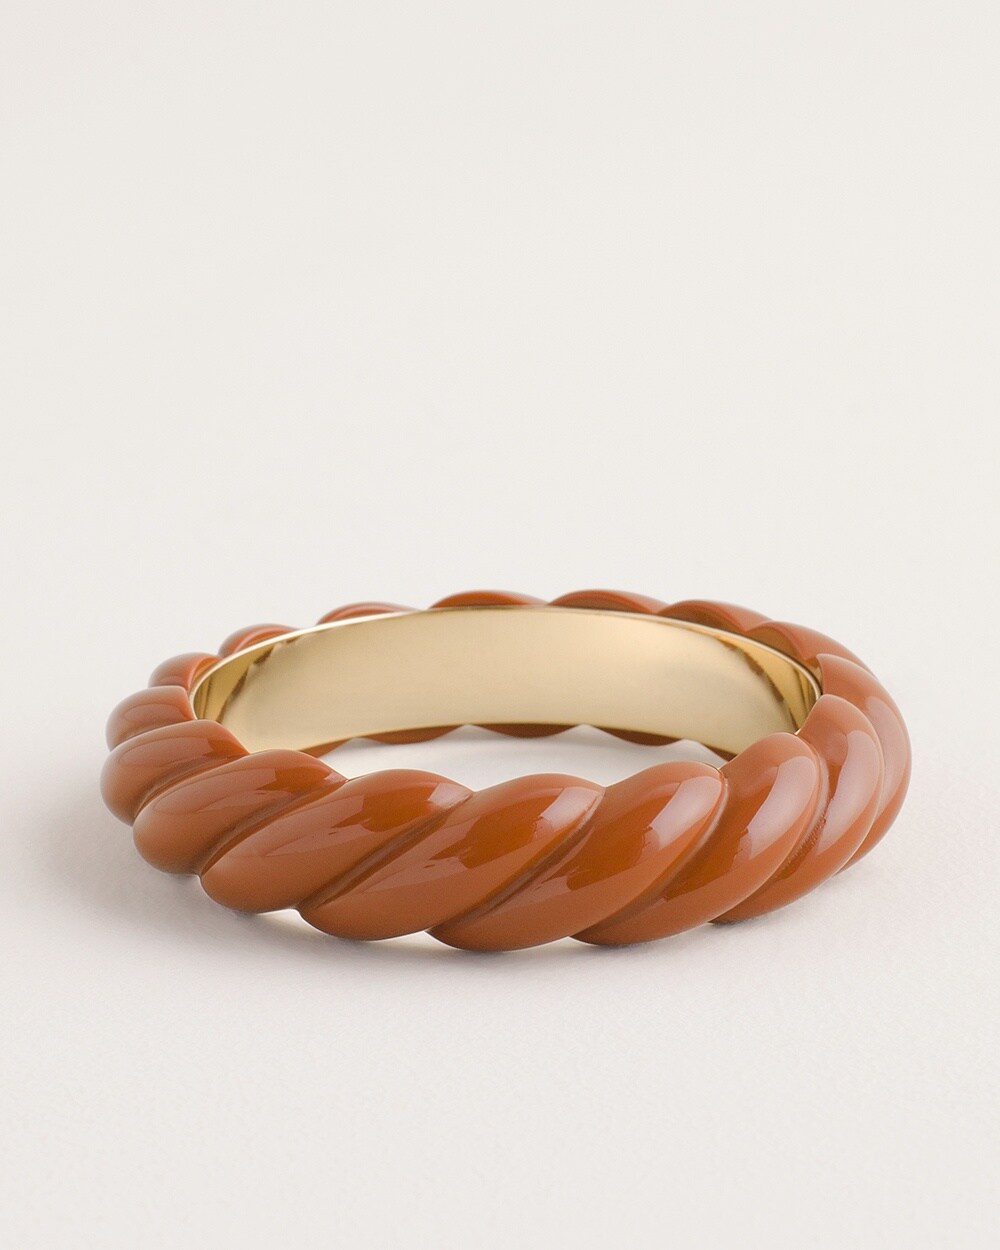 Terracotta-Colored Cuff Bracelet